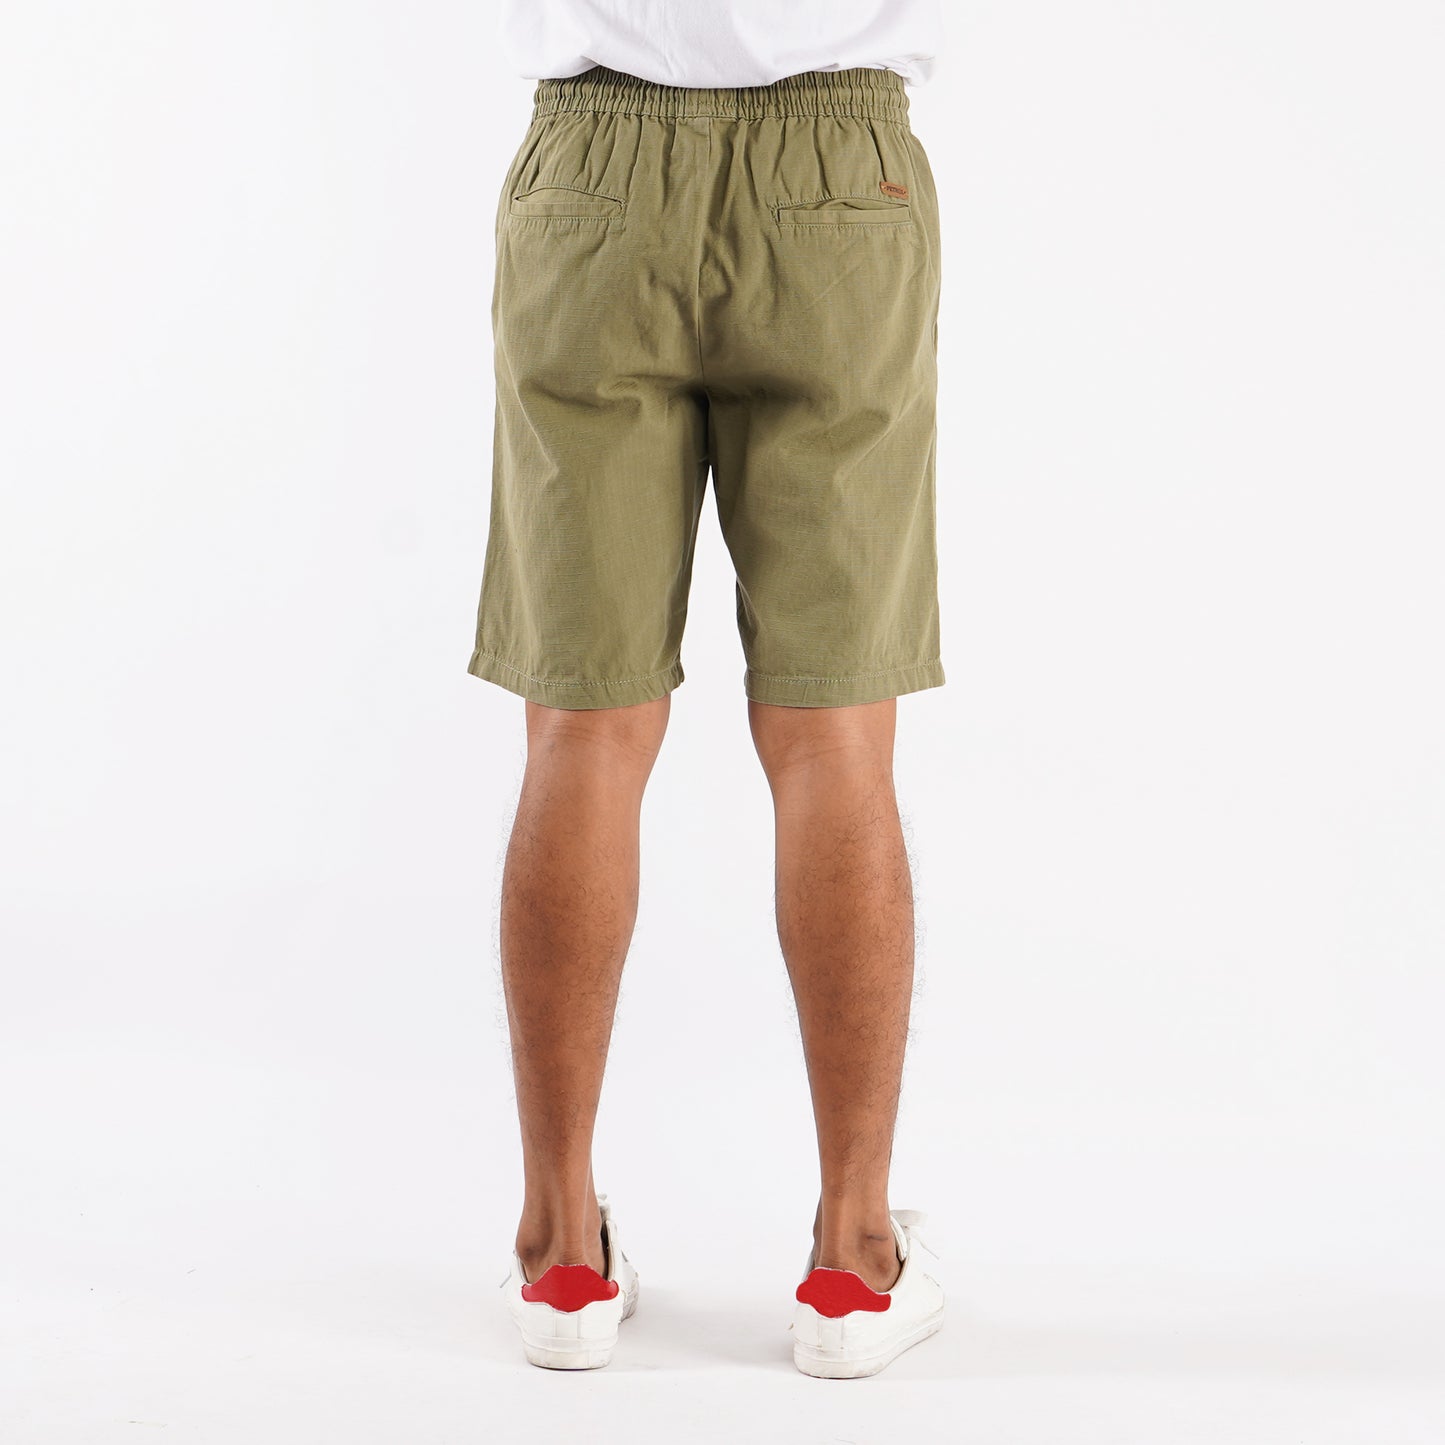 Petrol Basic Non-Denim Jogger Shorts for Men Regular Fitting Garment Wash Fabric Casual short Light Fatigue Jogger short for Men 127352 (Light Fatigue)